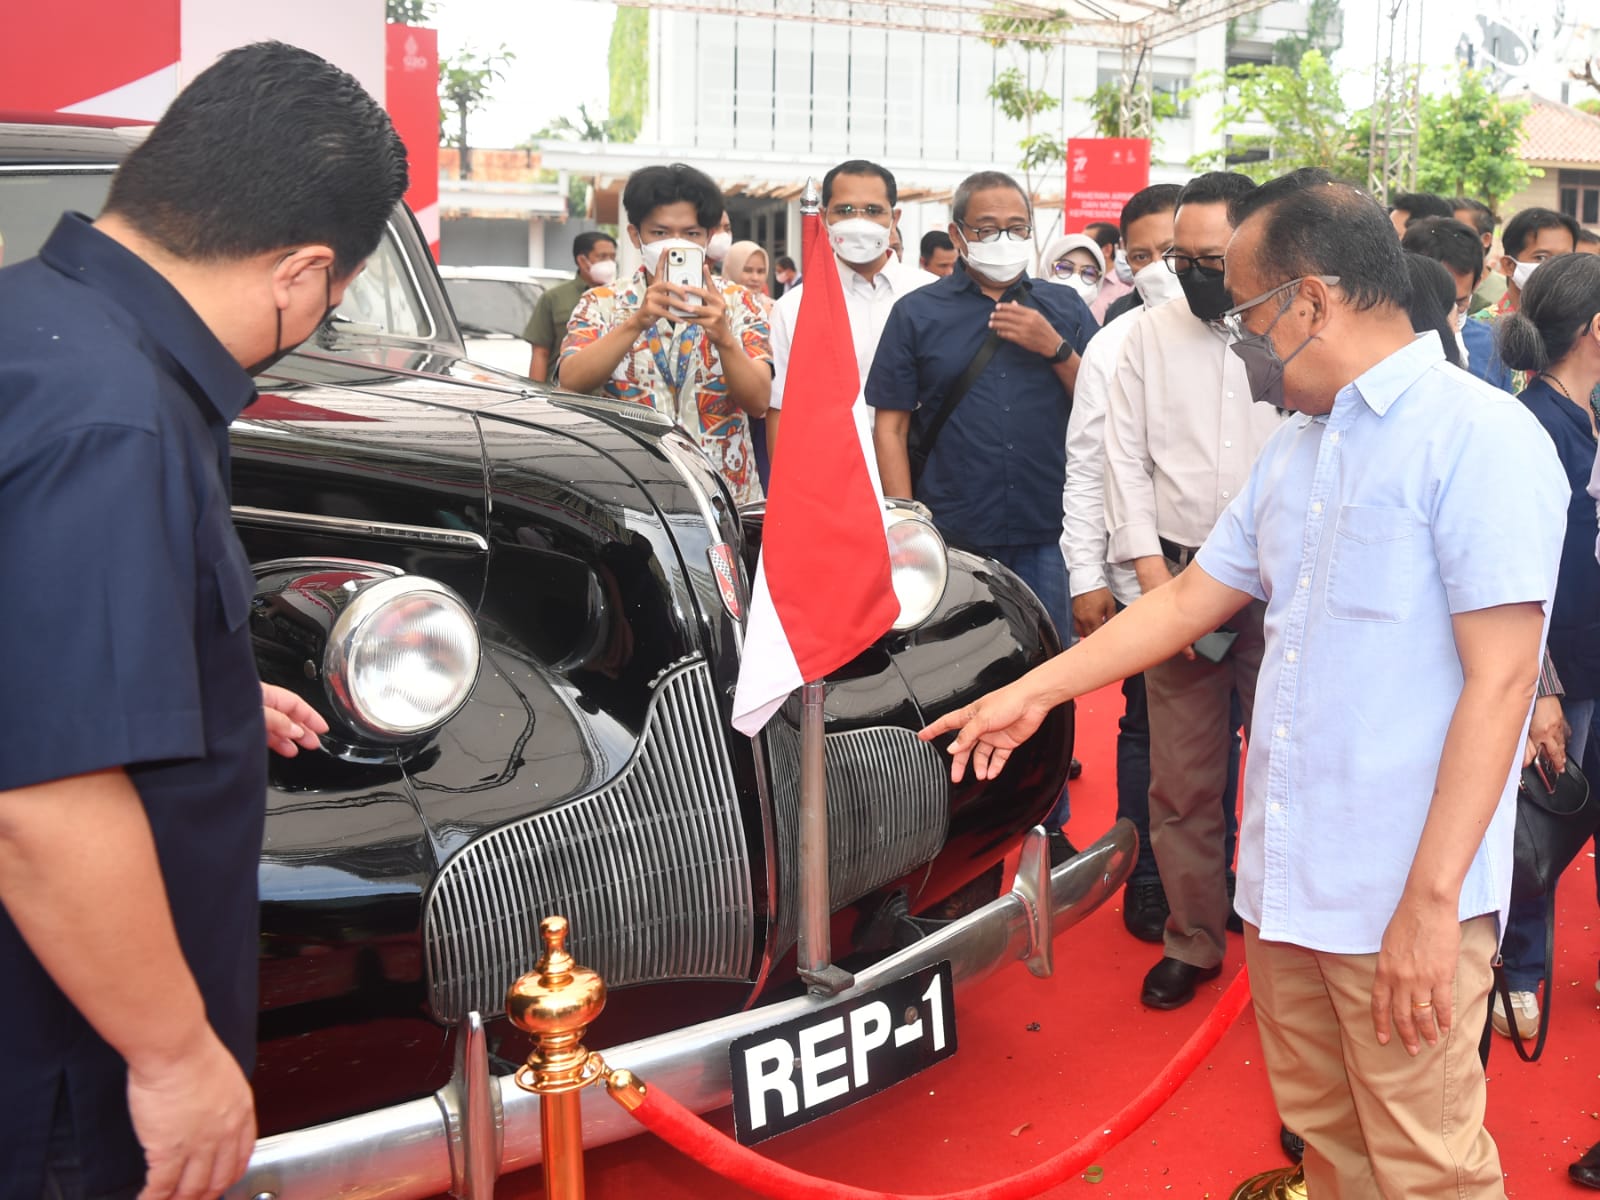 Menteri Sekretaris Negara Pratikno dan Menteri BUMN Erick Thohir  meninjau salah satu koleksi mobil Kepresidenan di Sarinah, Jakarta, Sabtu, 13 Agustus 2022.